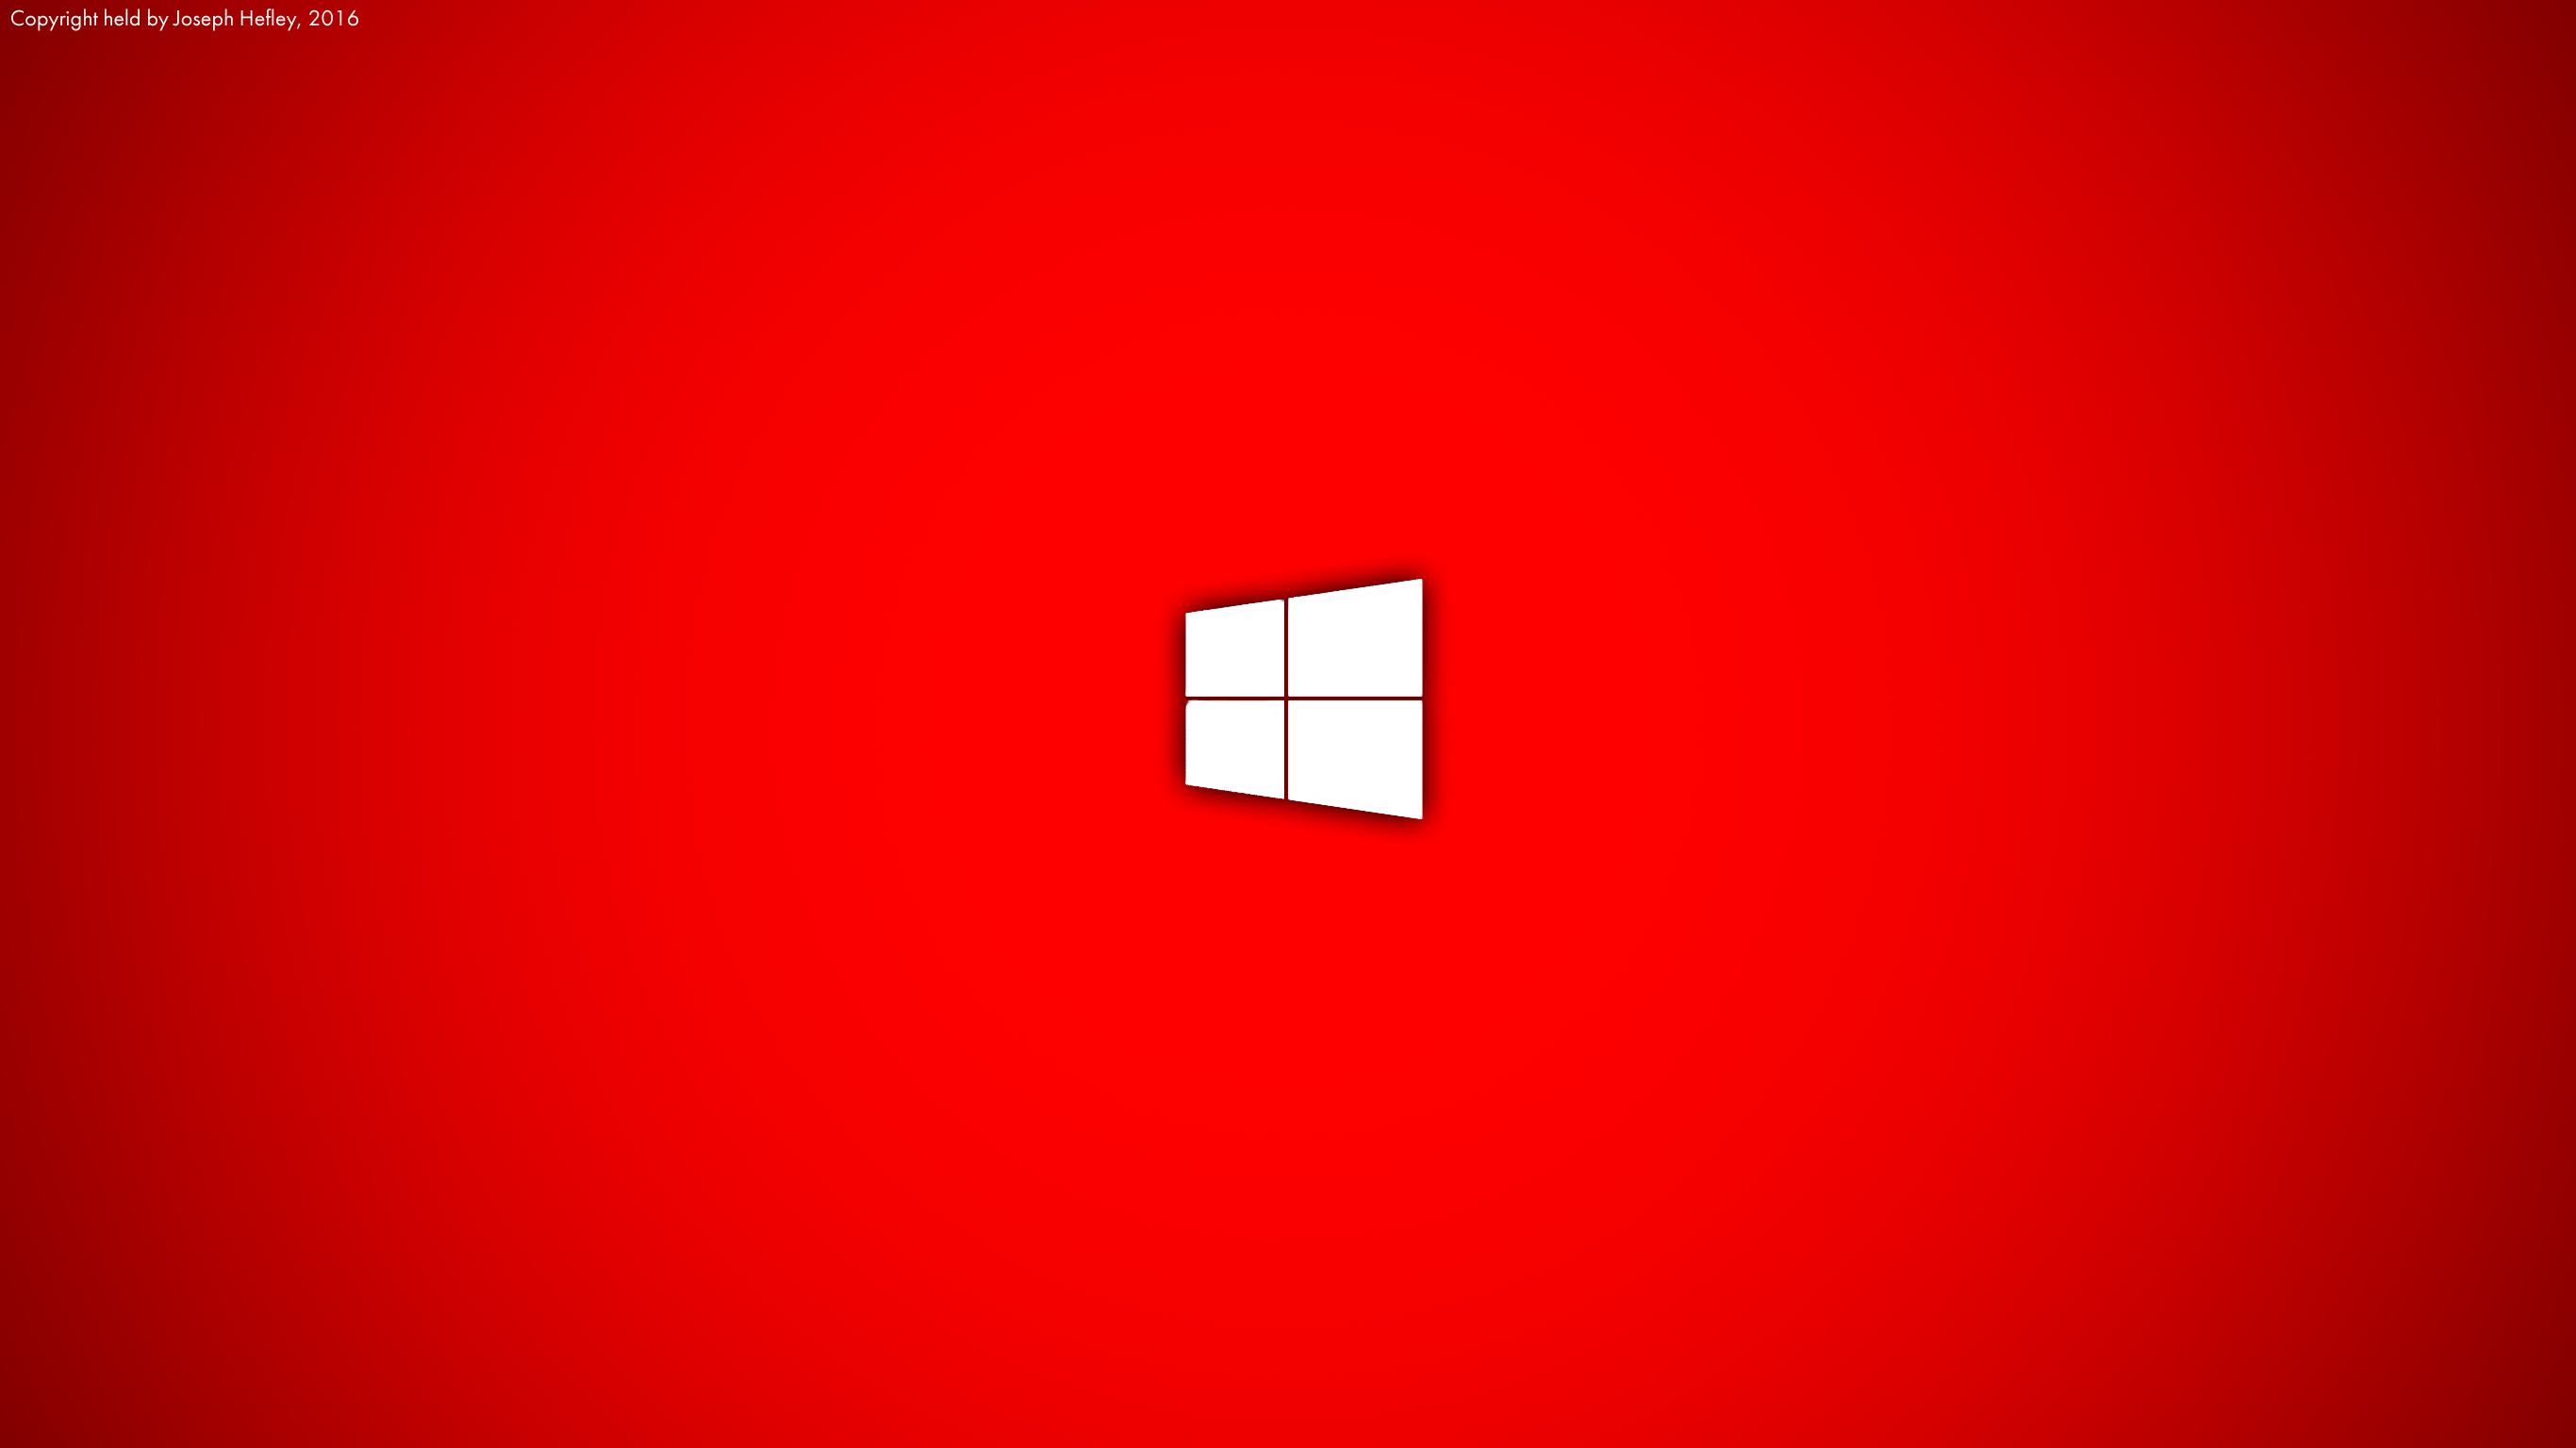 Red Windows 10 Wallpaper 3khd By Joetpb On Deviantart